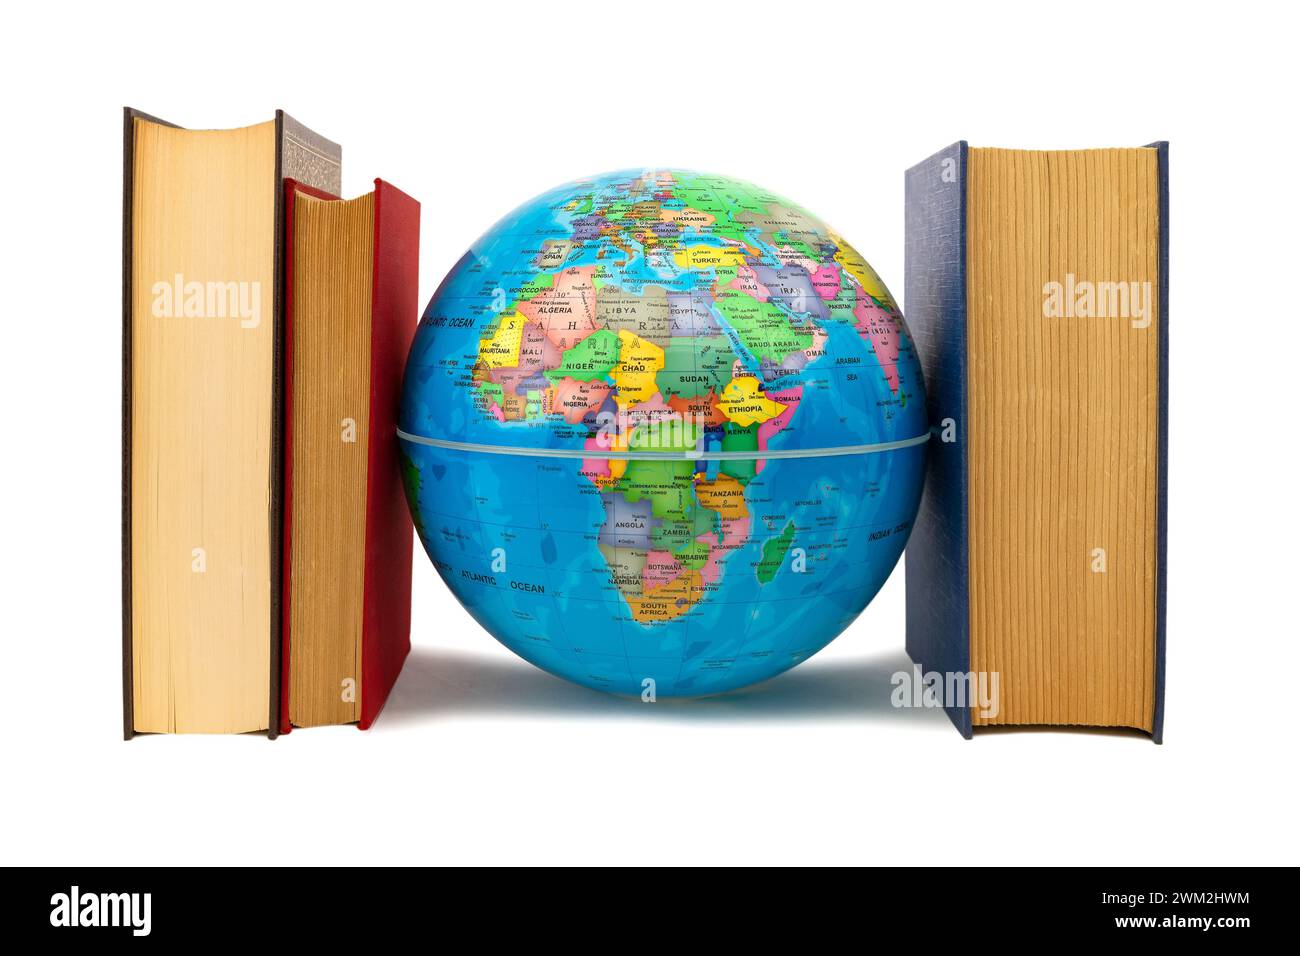 Globo escoltado por libros donde se puede ver África y Europa: Concept de Protección y defensa. Los libros flanquean la Tierra como defensa. Stockfoto